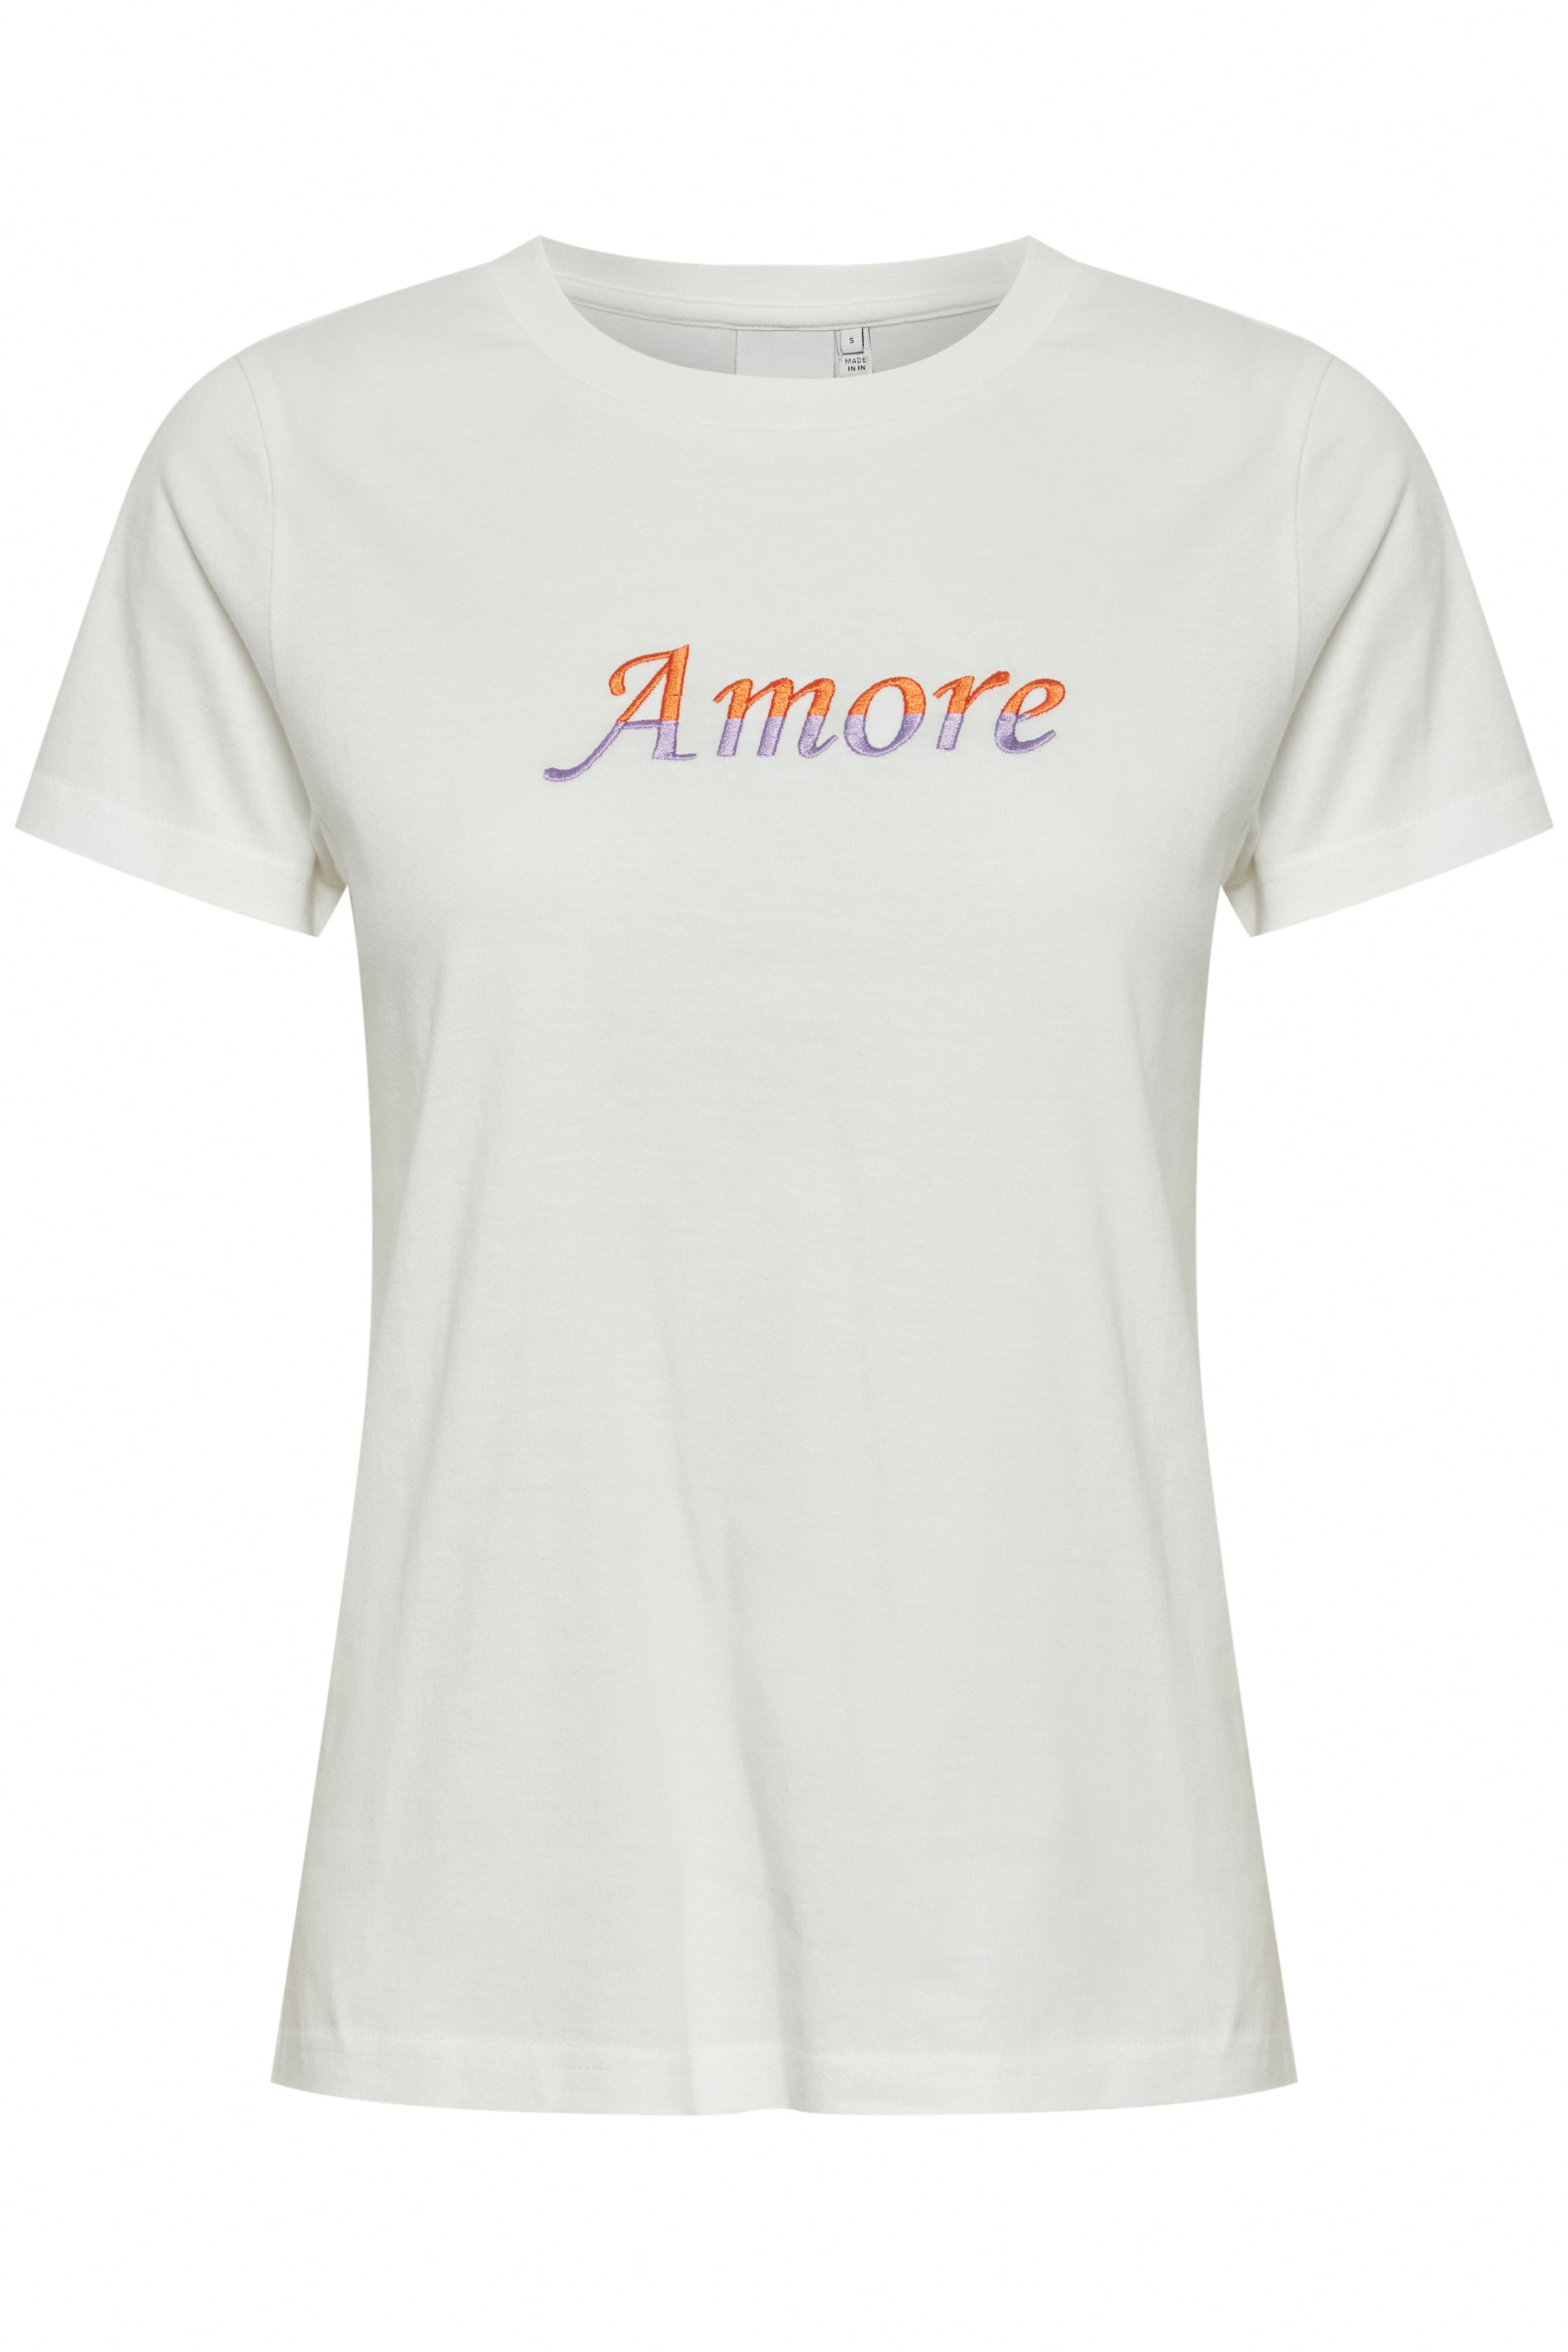 Runela T-Shirt Cloud Dancer/Amore